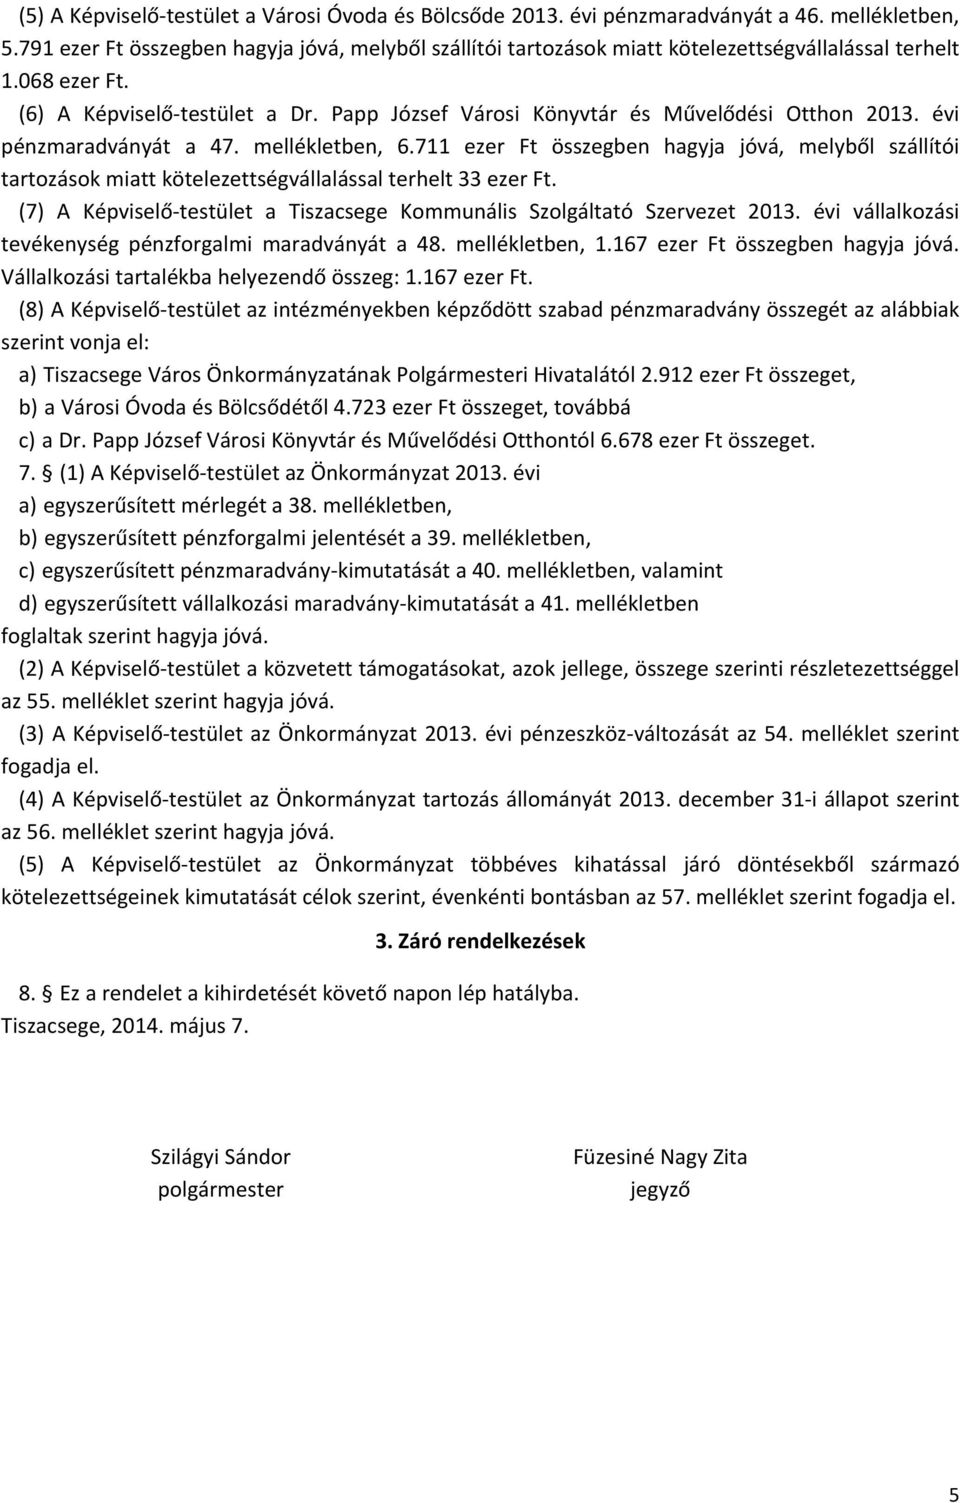 Papp József Városi Könyvtár és Művelődési Otthon 2013. évi pénzmaradványát a 47. mellékletben, 6.